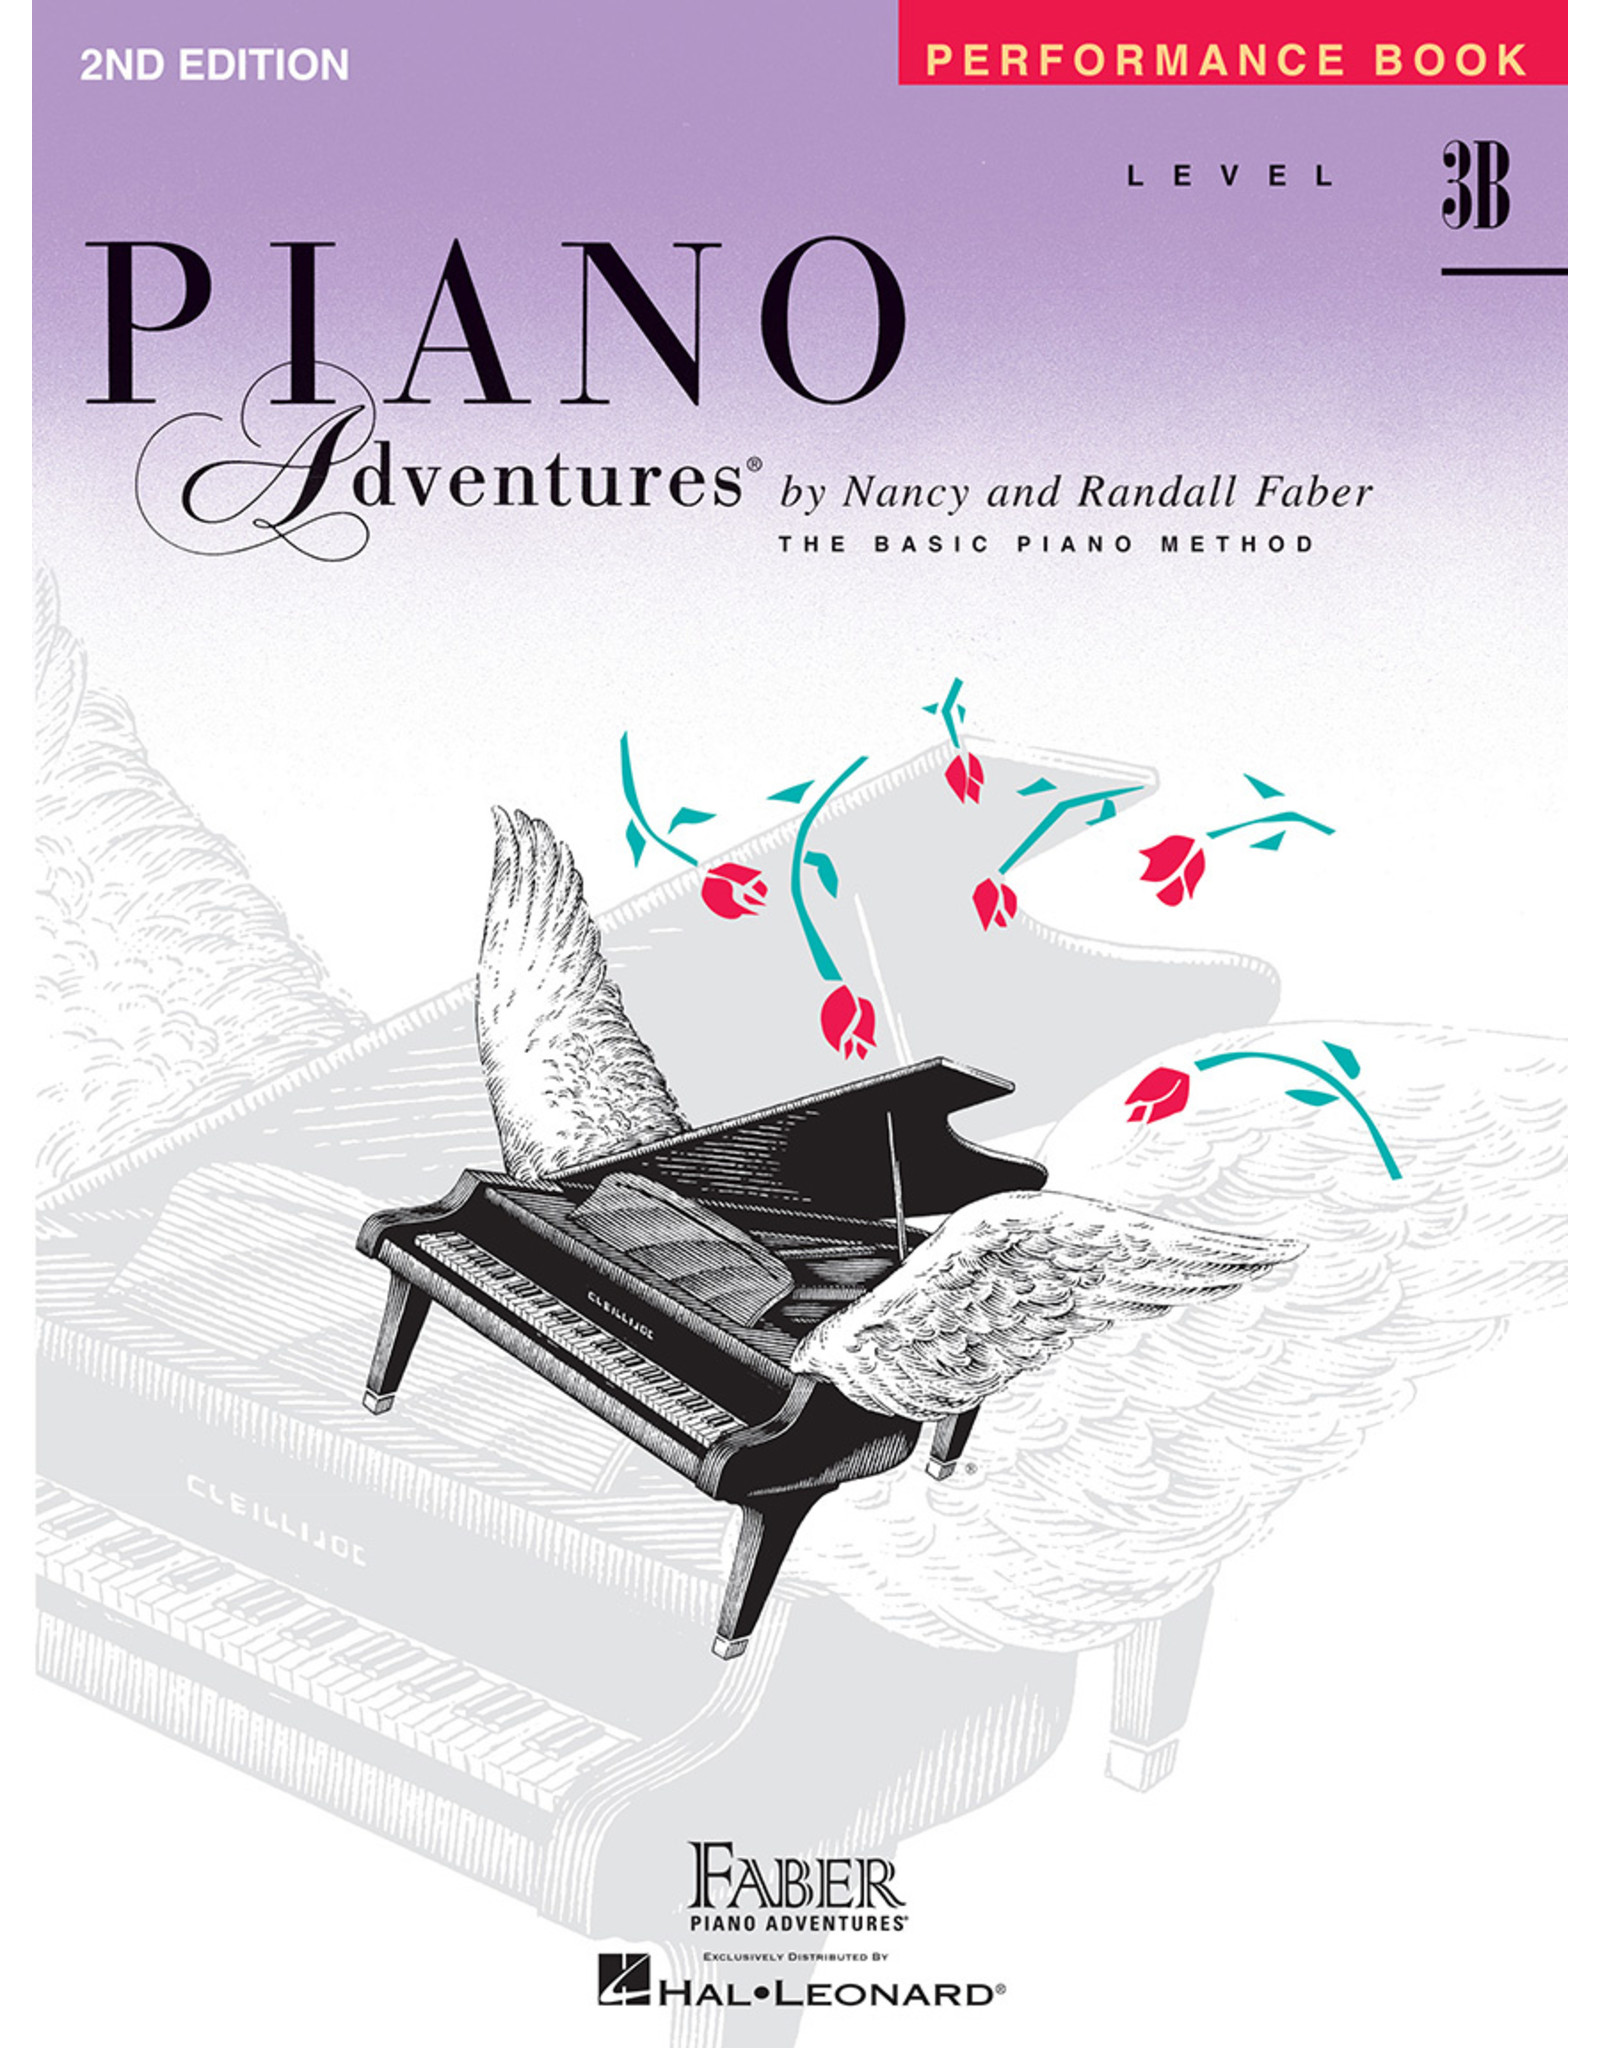 Faber Piano Adventures Faber Piano Adventures Performance Book